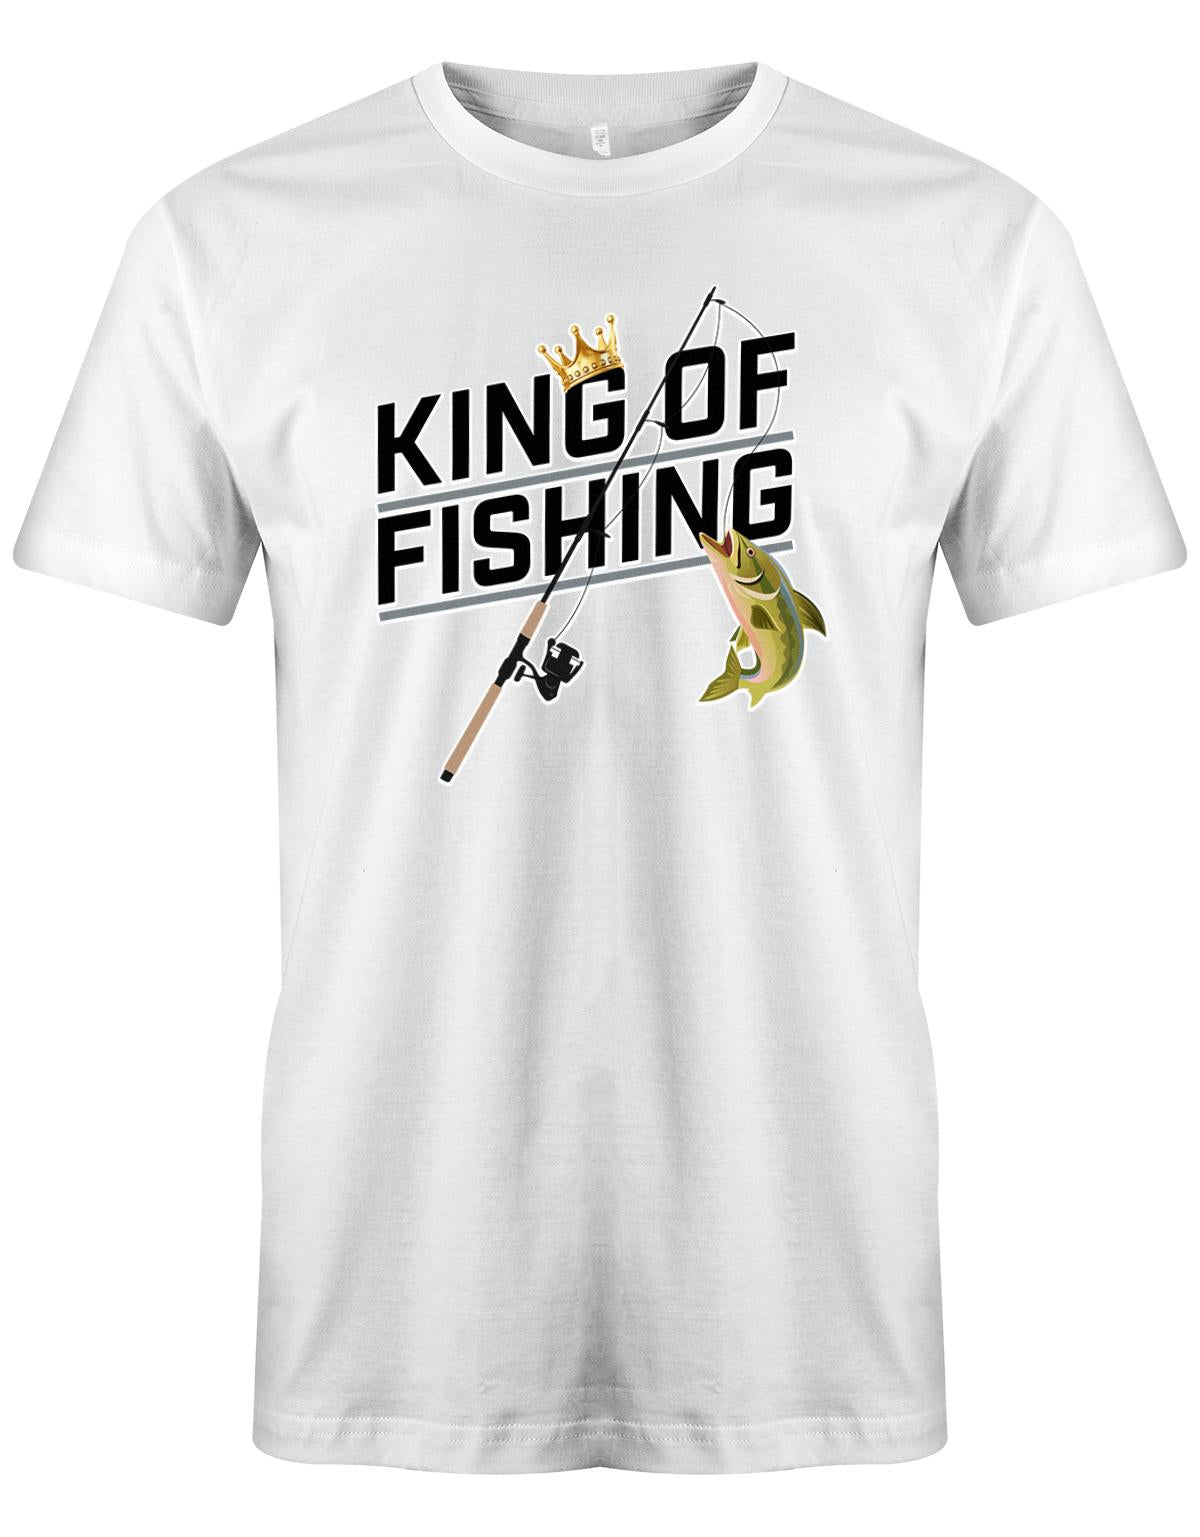 King-of-Fishing-Herren-Shirt-Weiss